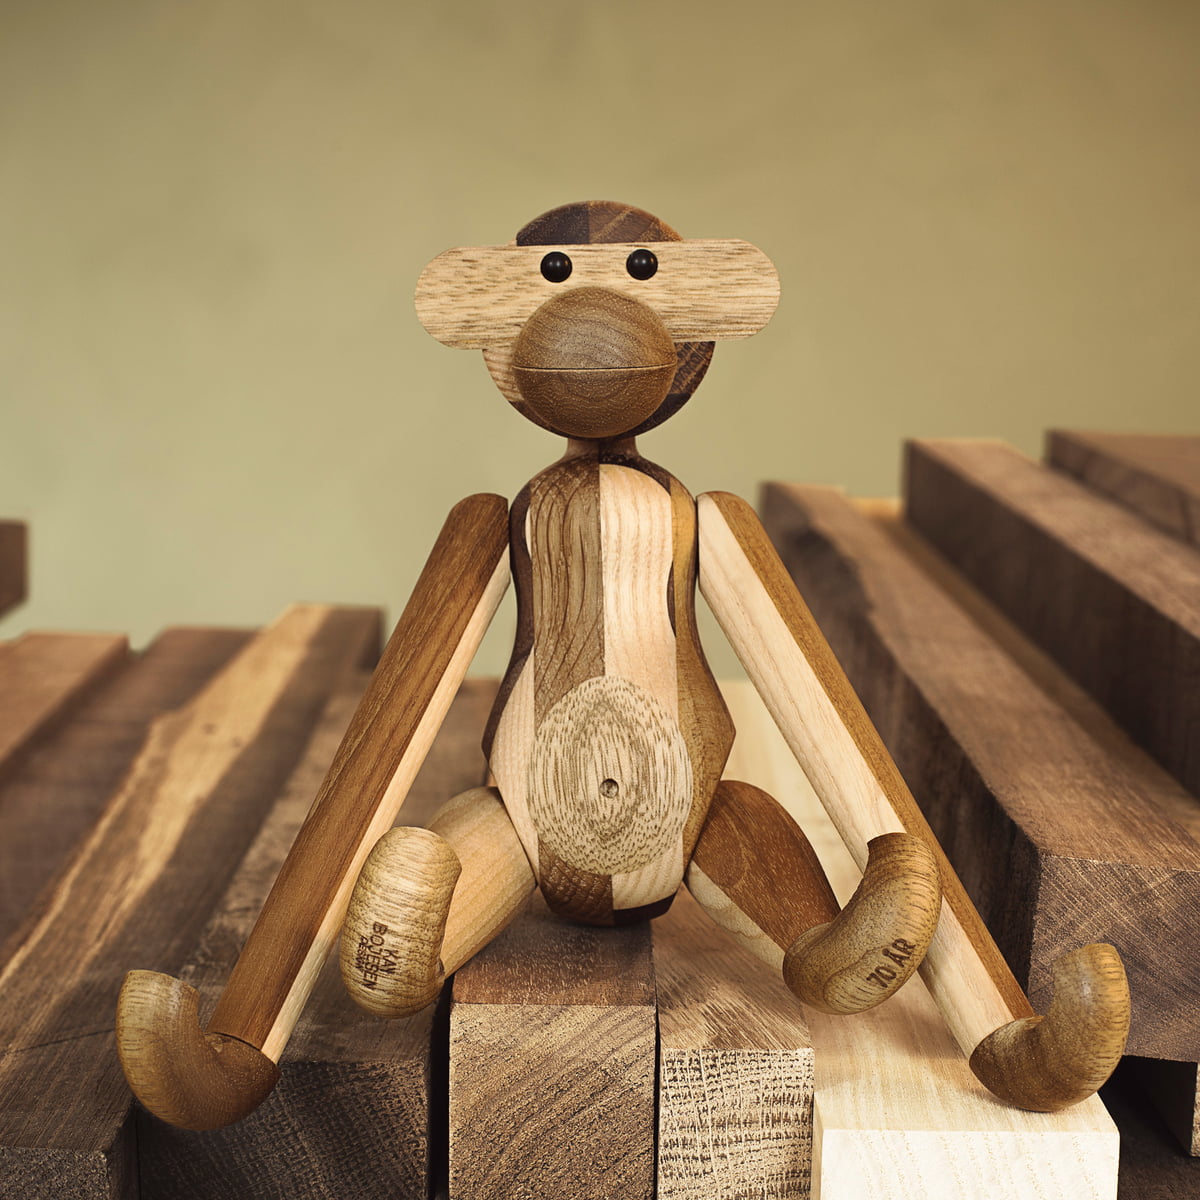 Kay Bojesen Monkey reelaborada de madera mixta, mini